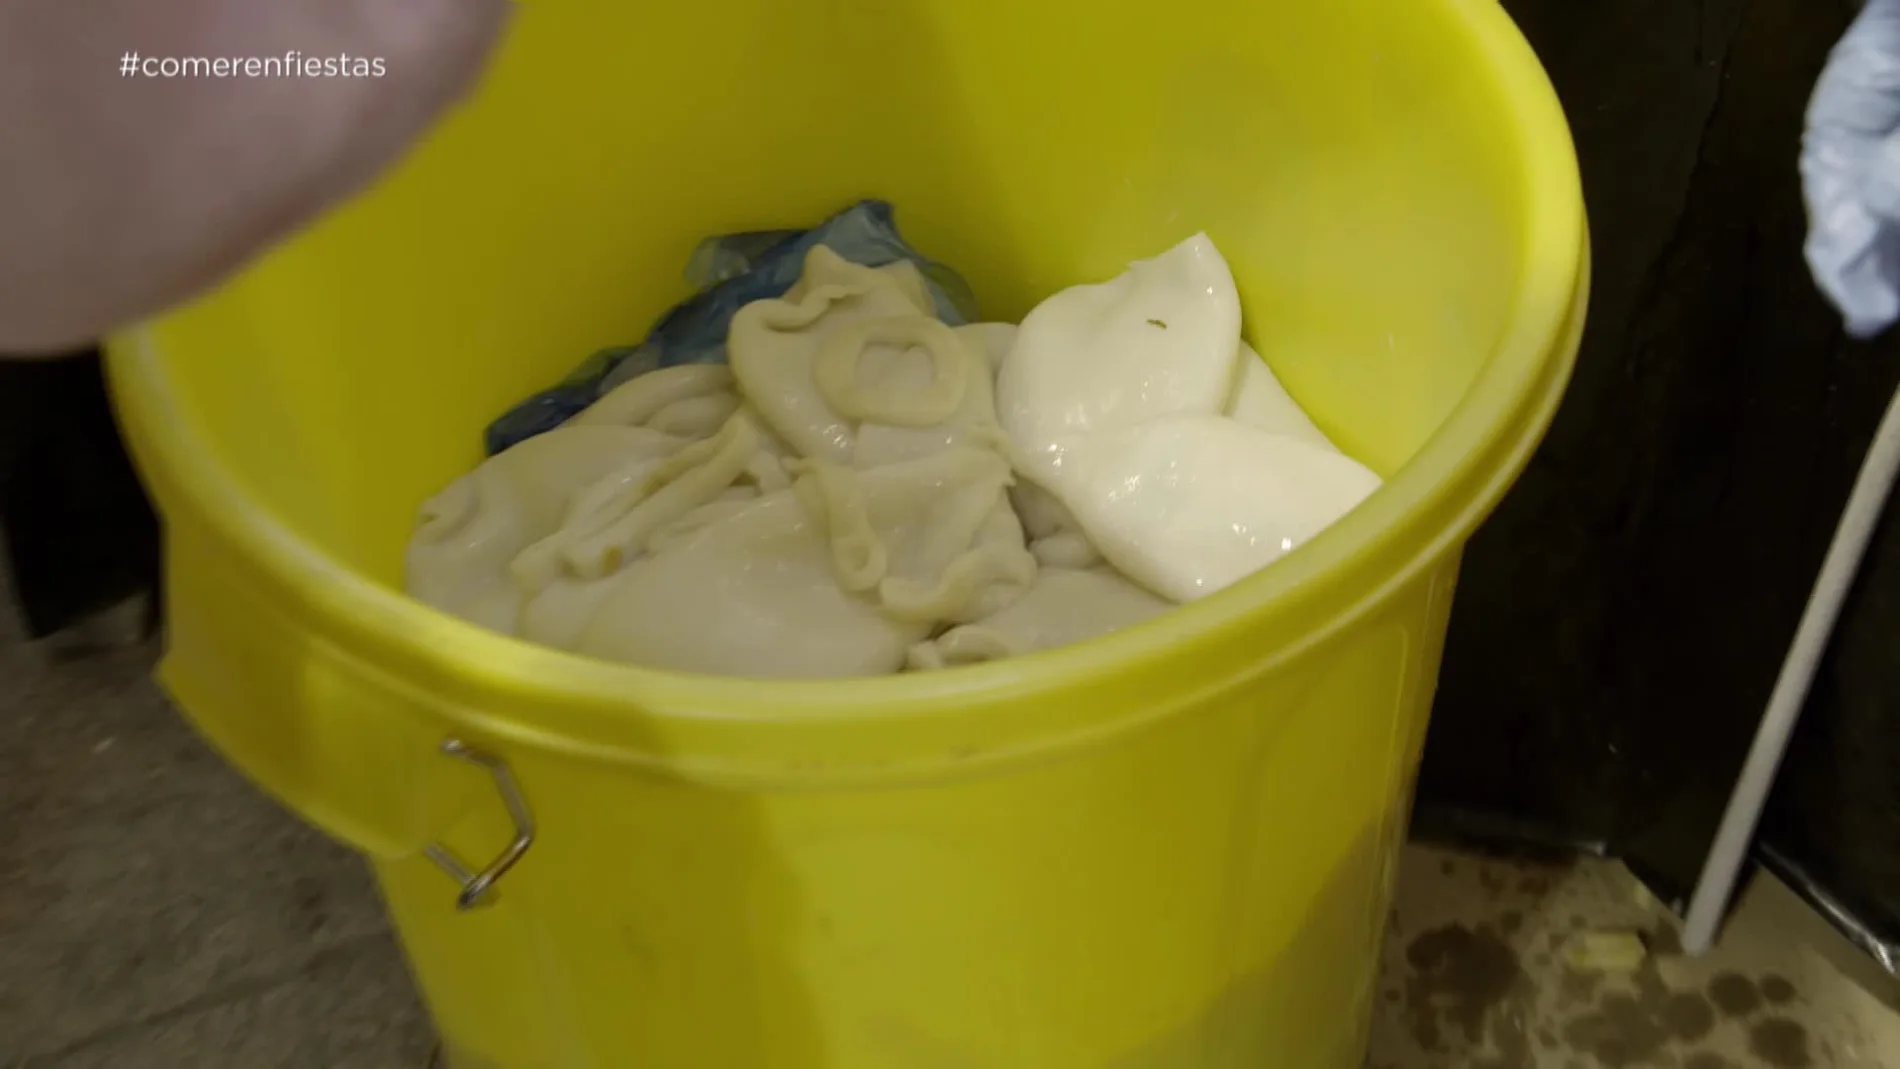 Descongelando calamares en un cubo de basura 